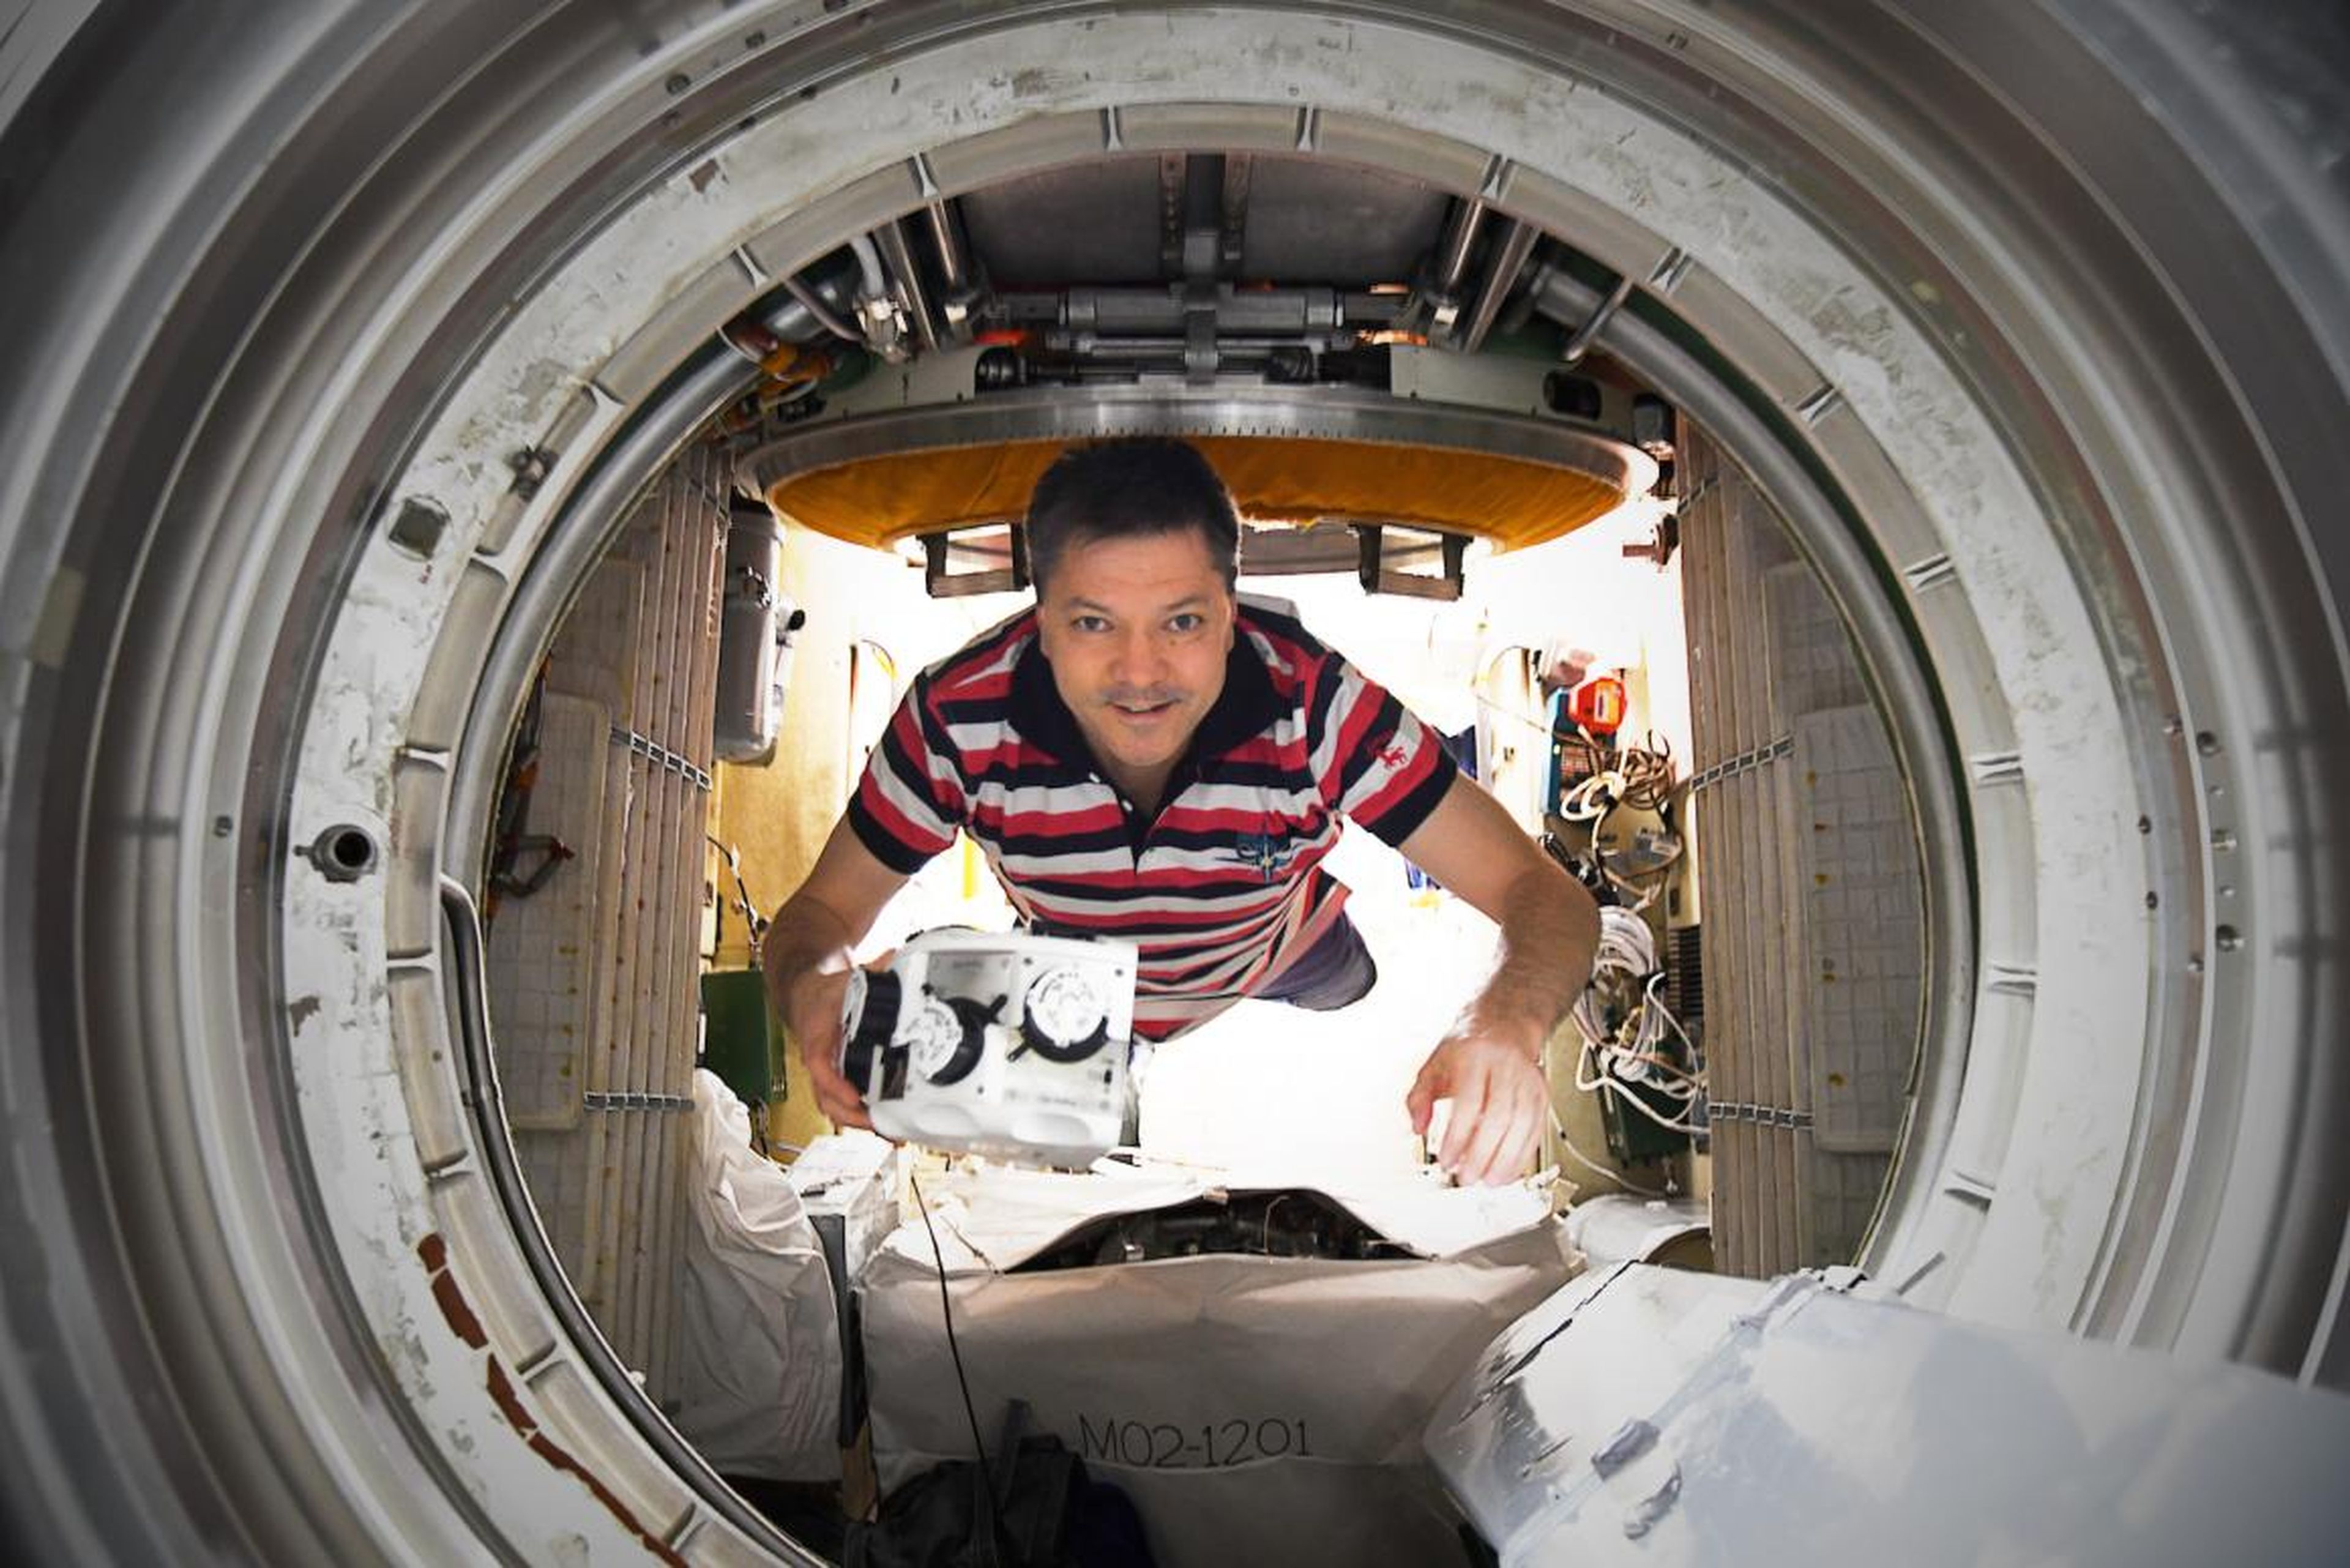 El cosmonauta Oleg Kononenko a bordo de la Estación Espacial Internacional durante el primer experimento con la bioimpresora 3D en diciembre de 2018.